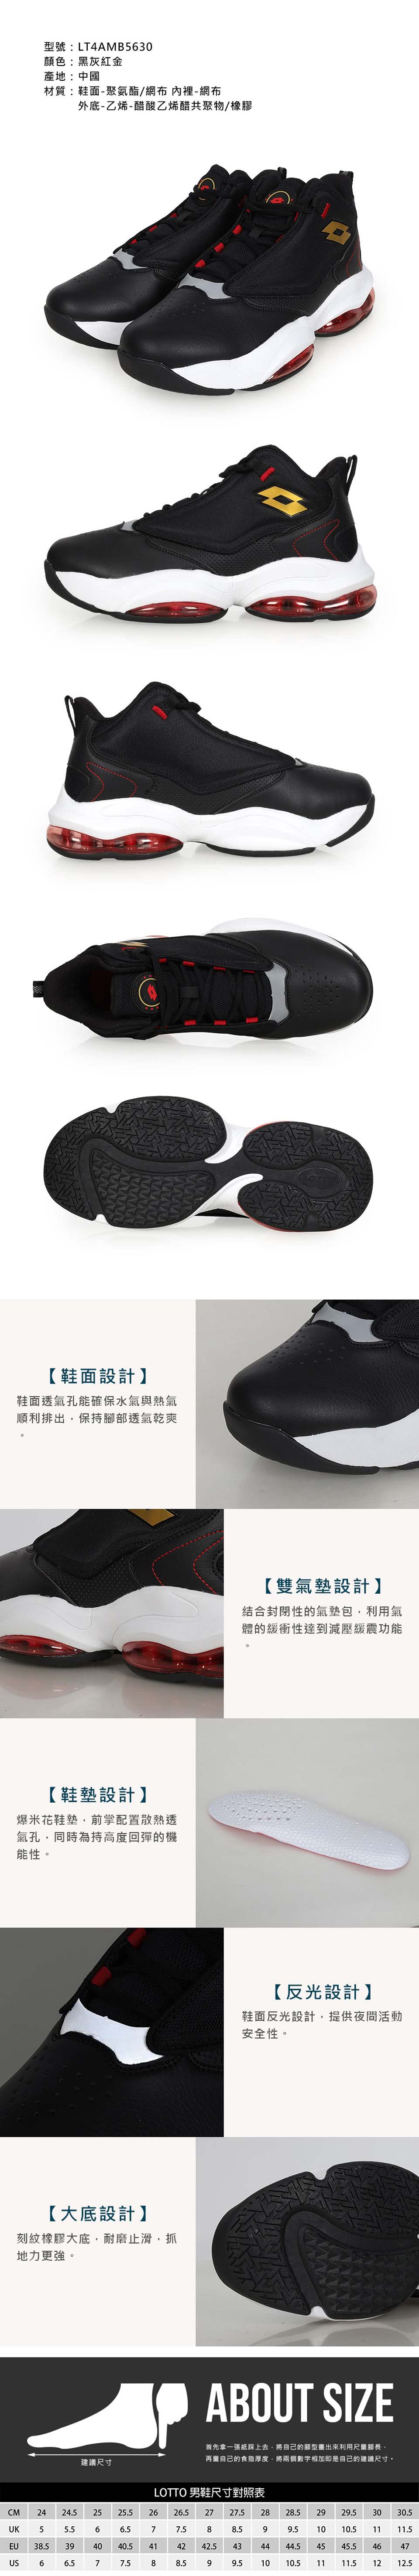 LOTTO 男避震雙氣墊專業籃球鞋-運動 訓練 氣墊 反光(